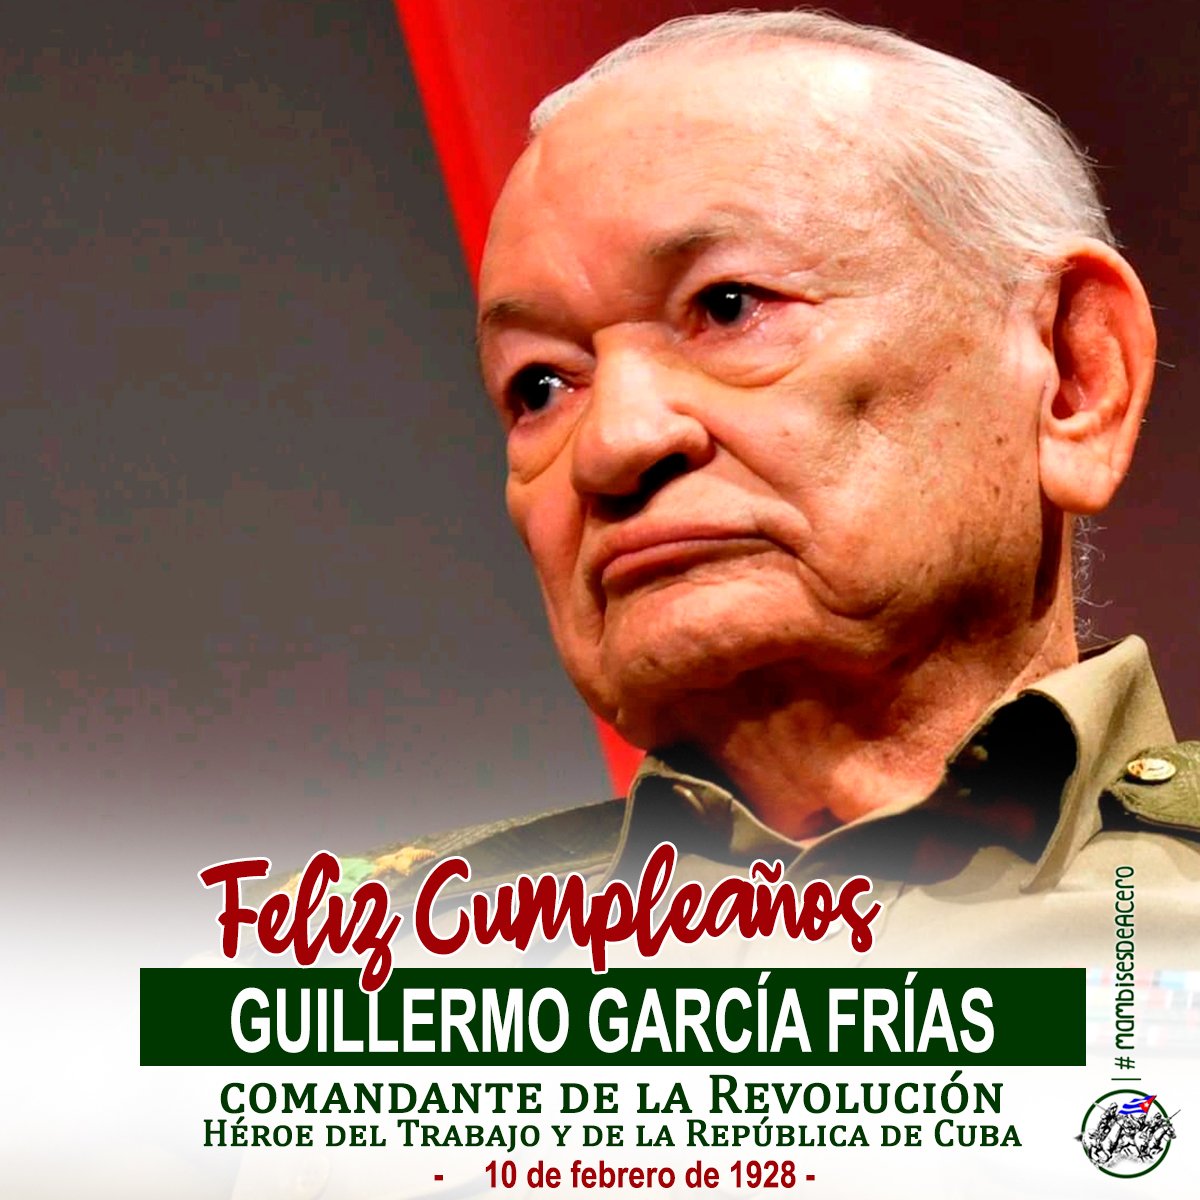 Hoy 10 de febrero está cumpliendo 96 años el Comandante de la Revolución Guillermo García Frías. Muchas felicidades te deseamos está gran familia de los #MambisesDeAcero